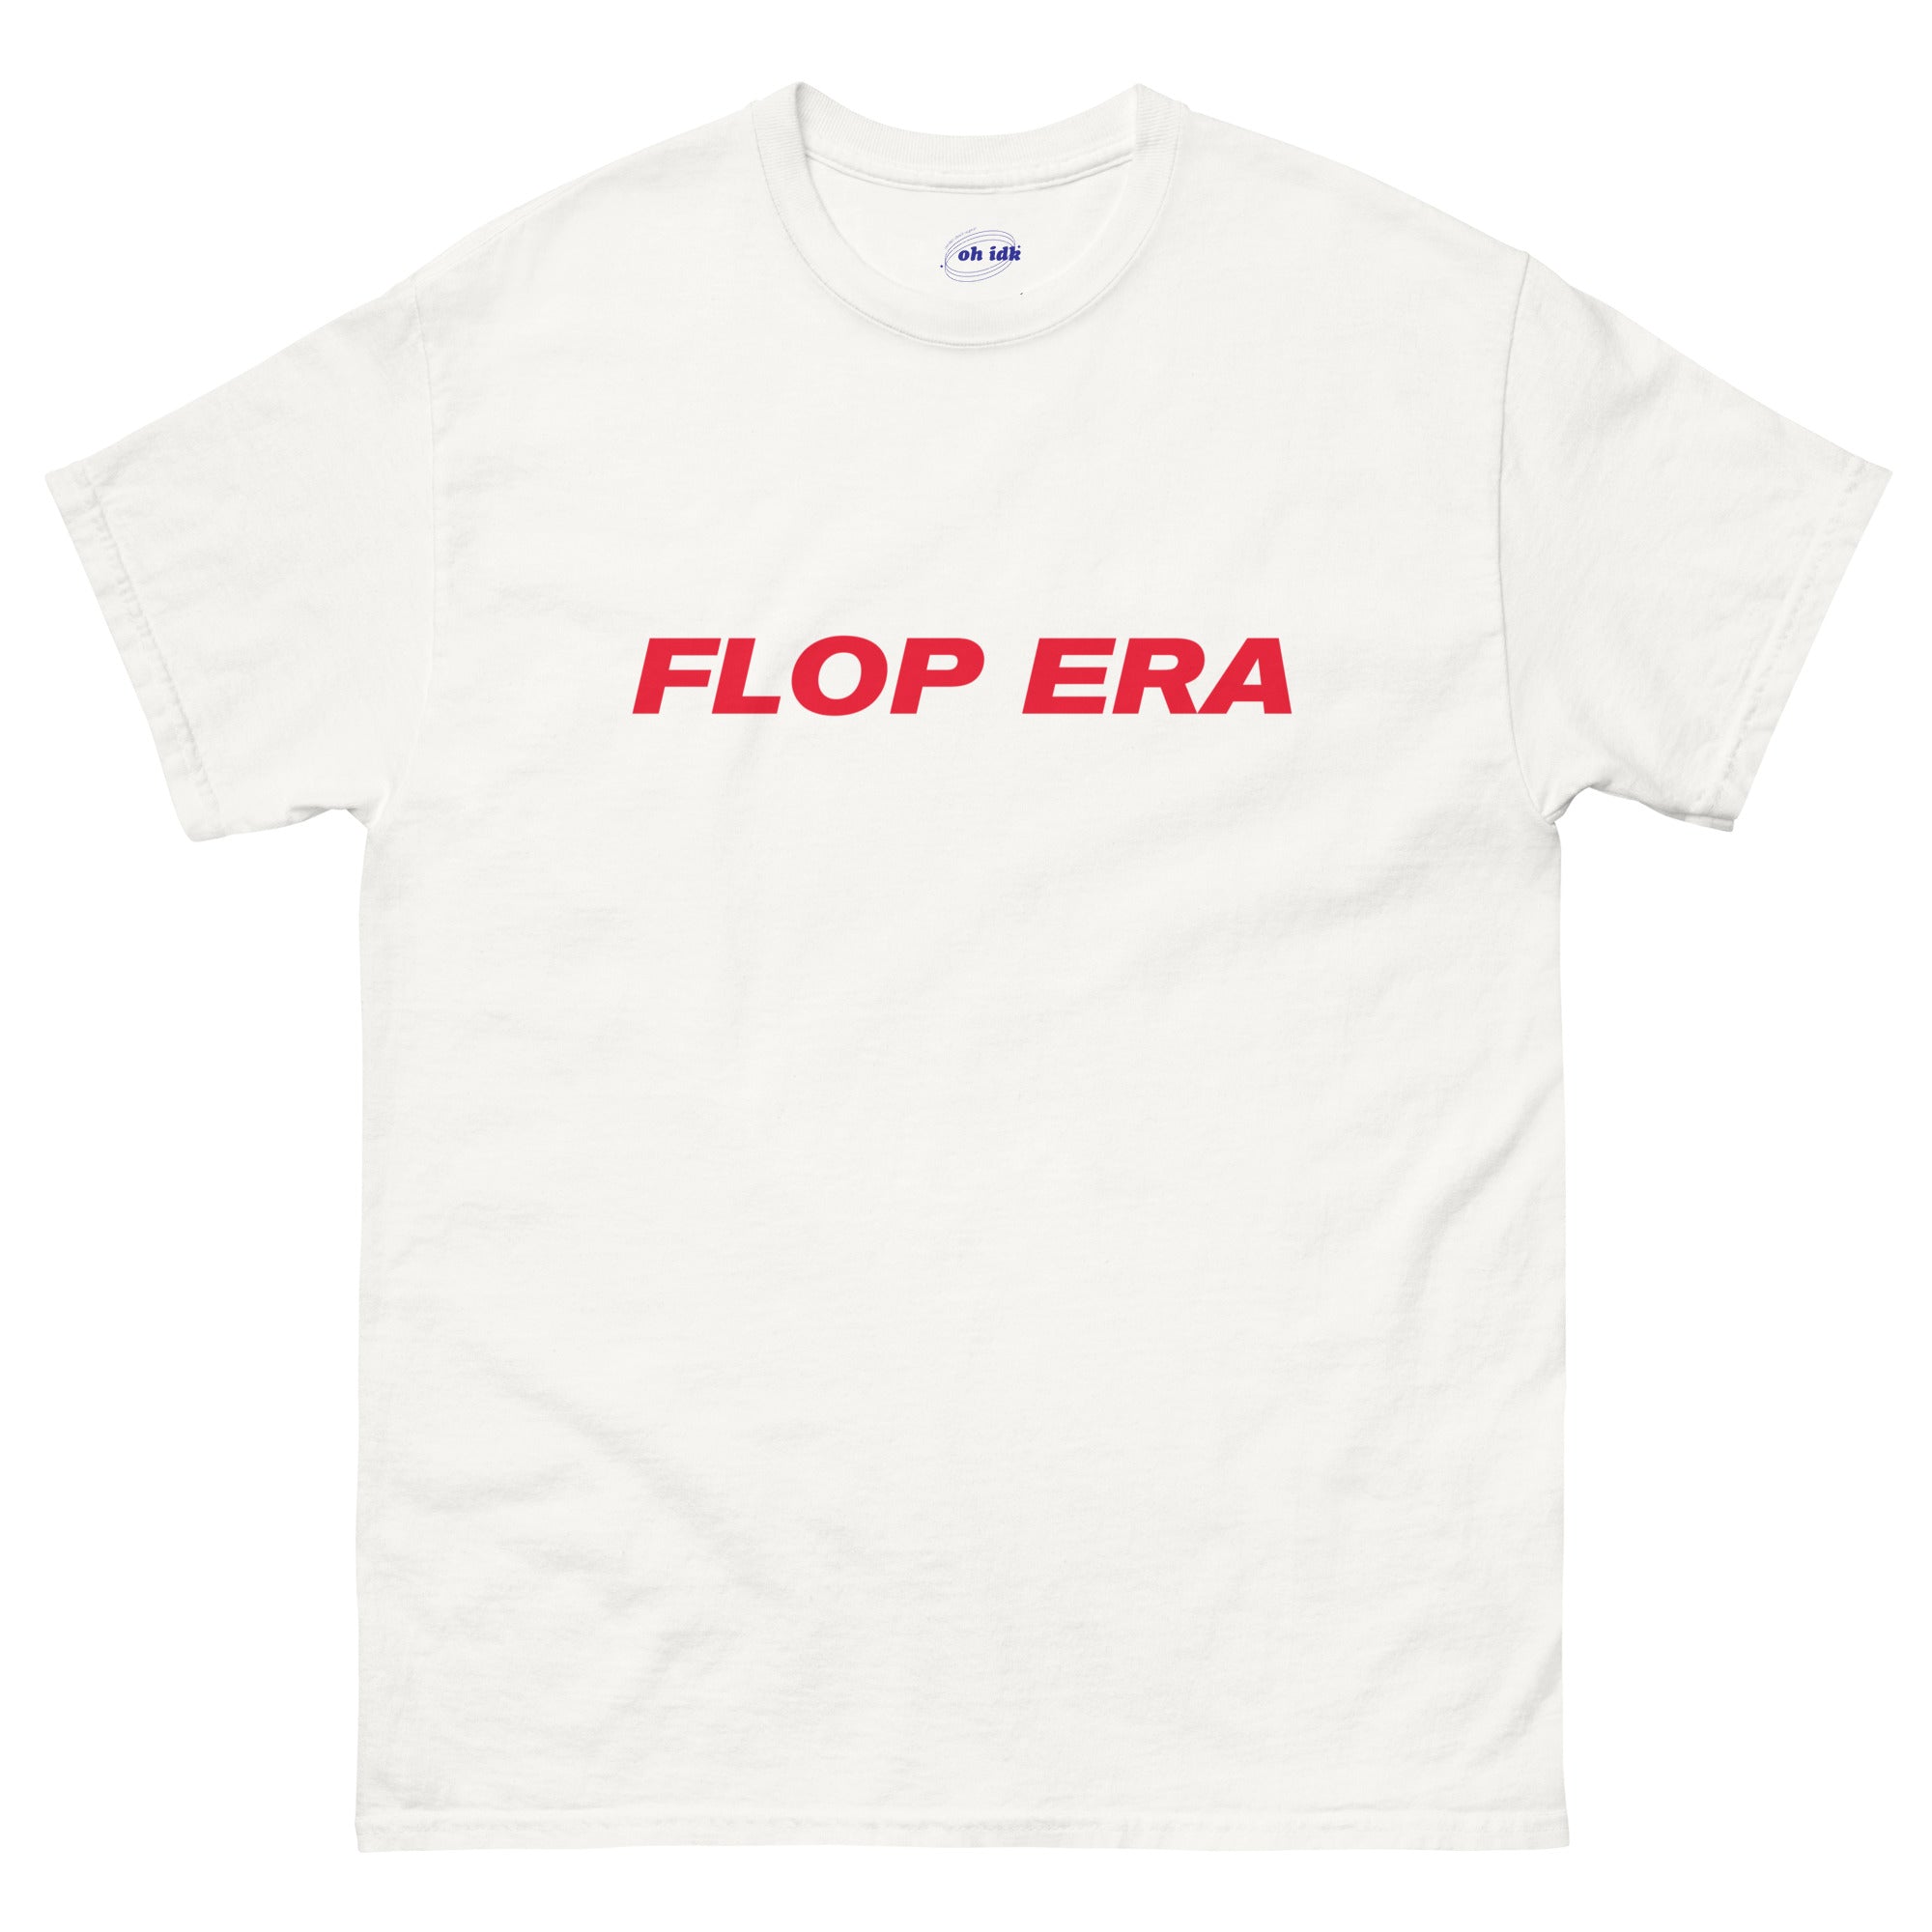 Flop Era - classic unisex tee